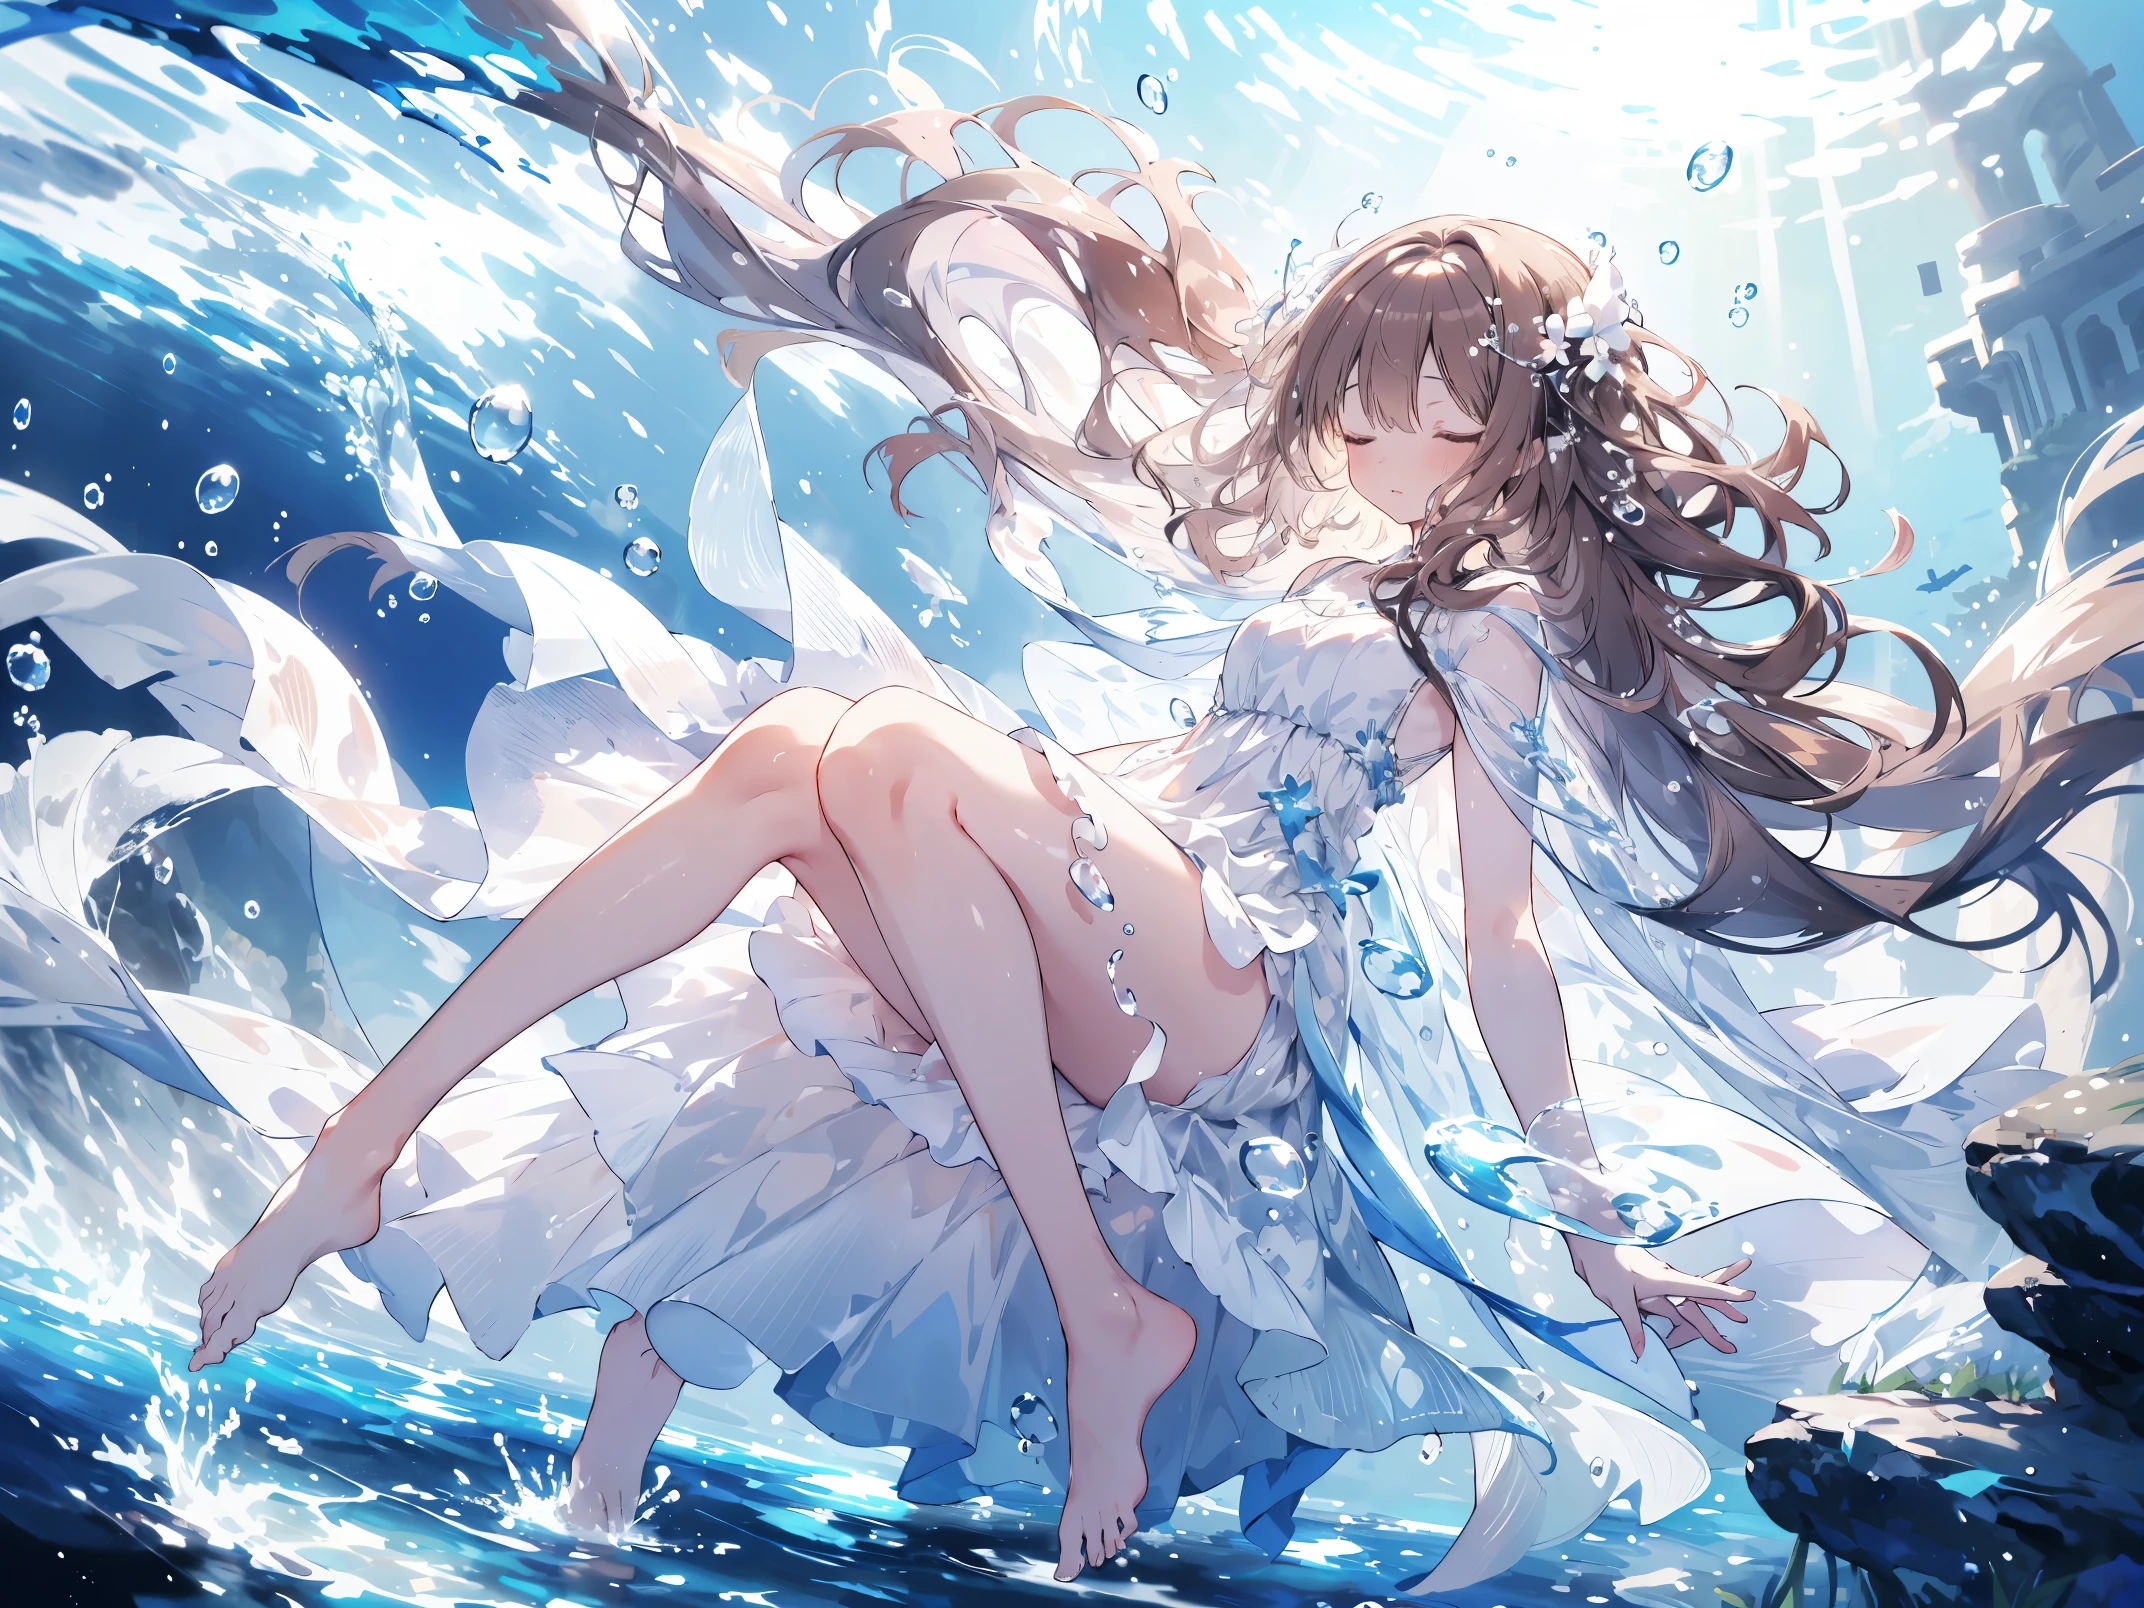 잠, an artwork of a woman in white 드레스 and flowing white hair under water, 소녀 1명, 드레스, 물 속, 홀로, 긴 머리, 눈을 감 으세요, 갈색 머리, air 거품, 맨발, 거품